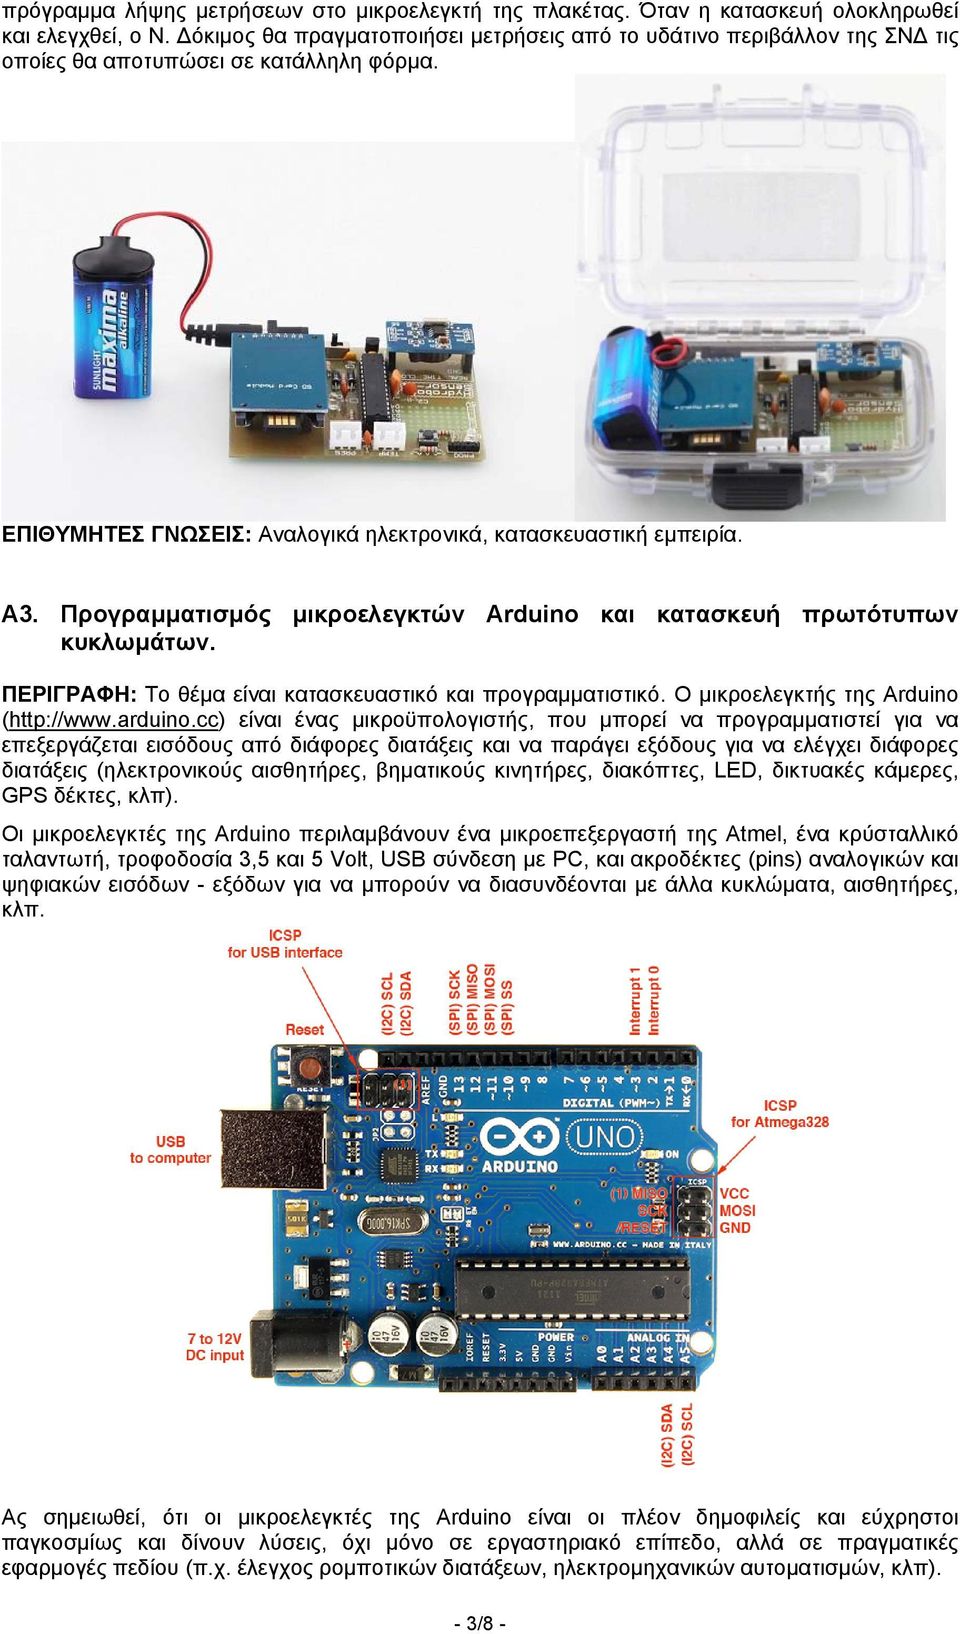 Προγραμματισμός μικροελεγκτών Arduino και κατασκευή πρωτότυπων κυκλωμάτων. ΠΕΡΙΓΡΑΦΗ: Το θέμα είναι κατασκευαστικό και προγραμματιστικό. O μικροελεγκτής της Arduino (http://www.arduino.